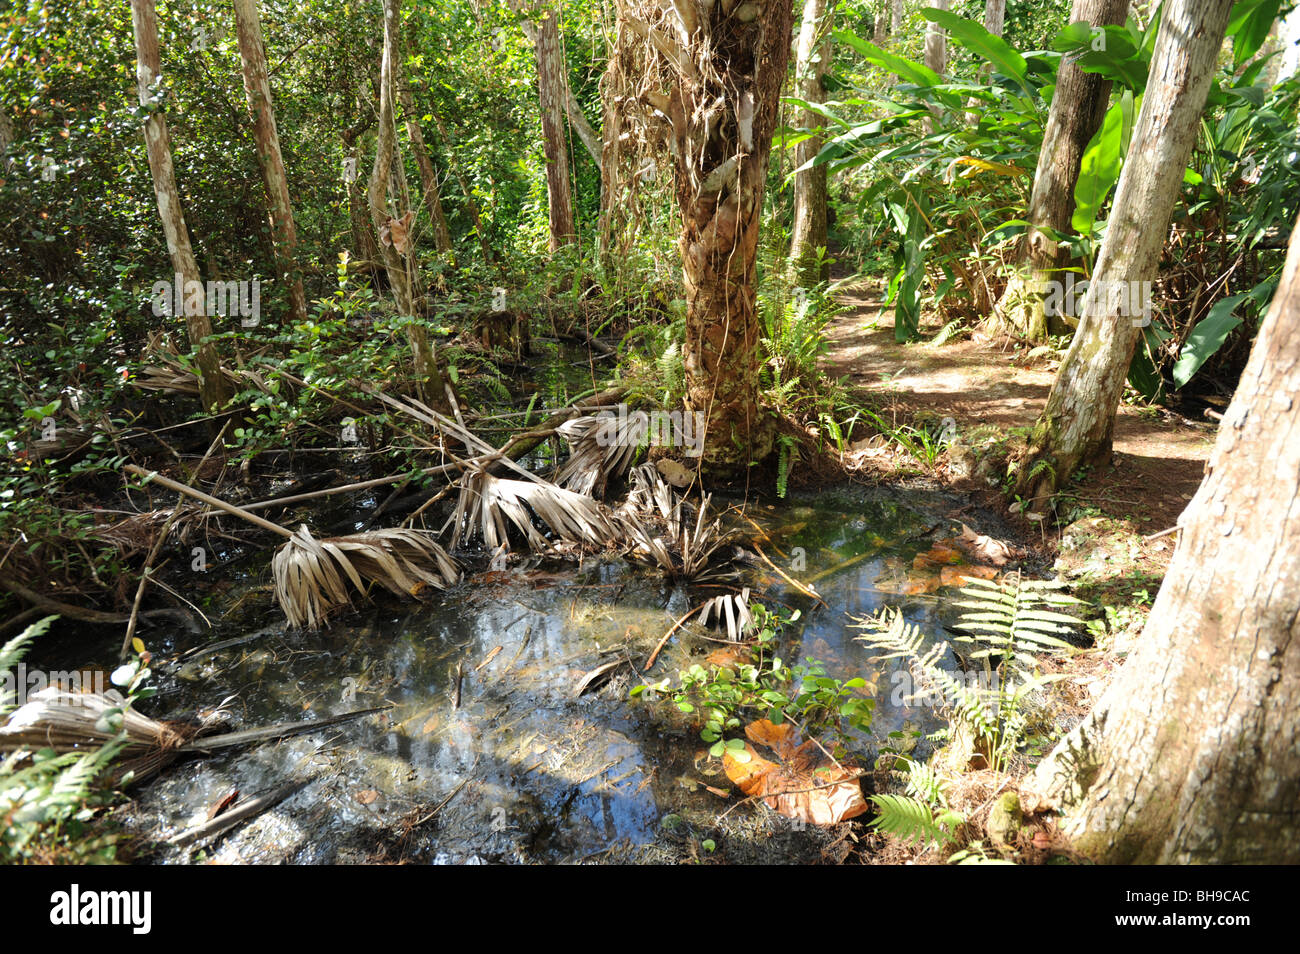 Les arbres et les souches d'arbres dans des régions marécageuses de l'Everglades de Floride USA Banque D'Images